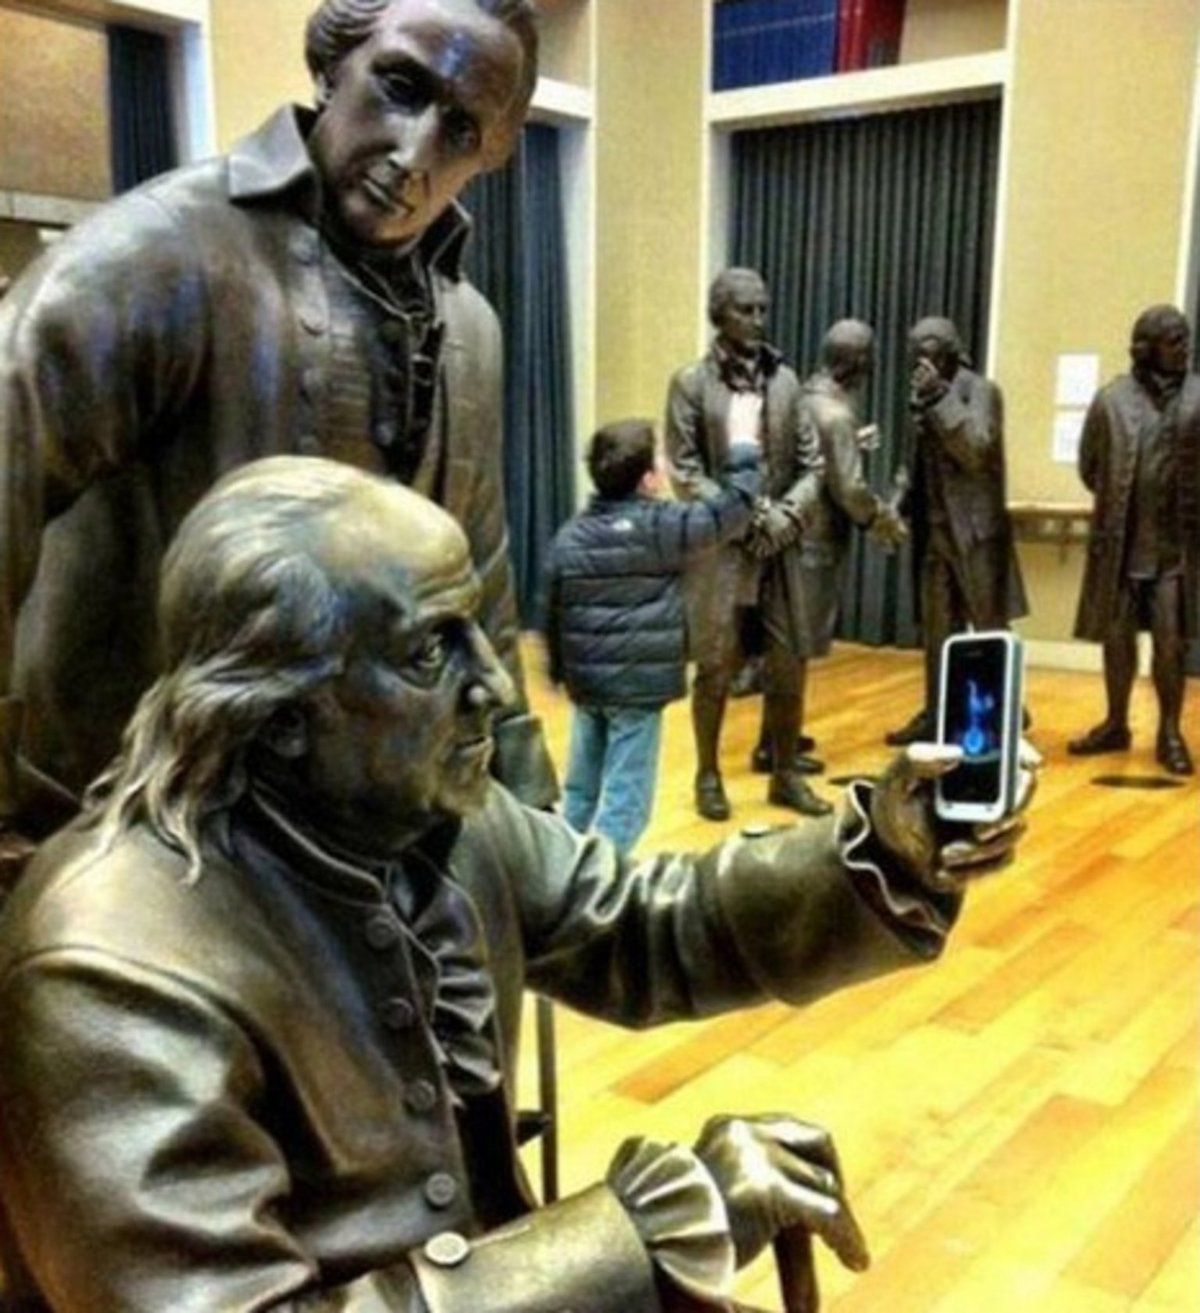 Ці люди показали всьому світу як зробити оригінальне фото з пам'ятником. Вчіться фотографуватися з пам'ятками правильно!